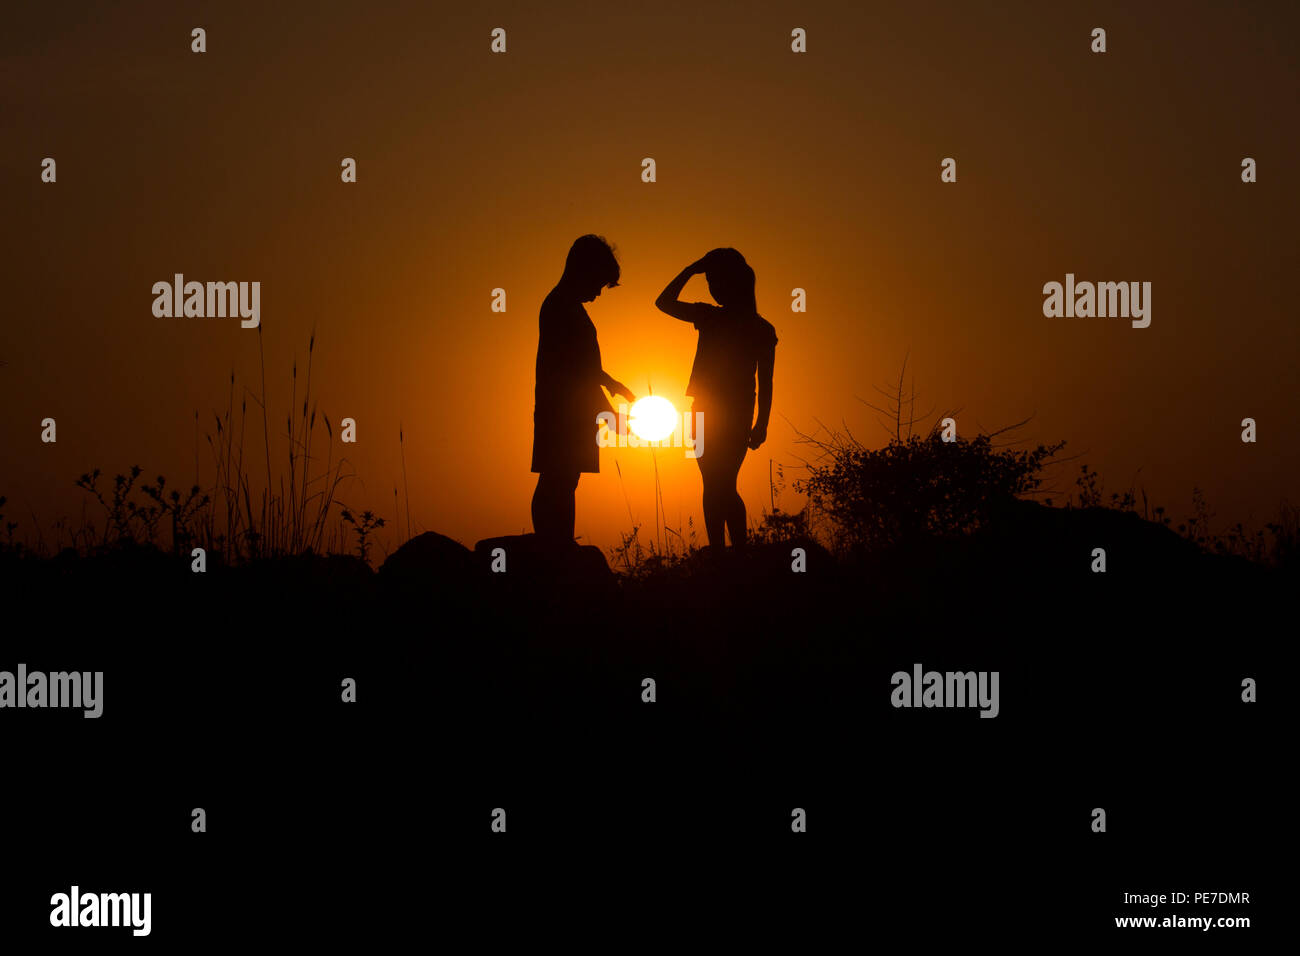 Un jeune garçon offre le coucher de soleil de la jeune fille à côté de lui Banque D'Images